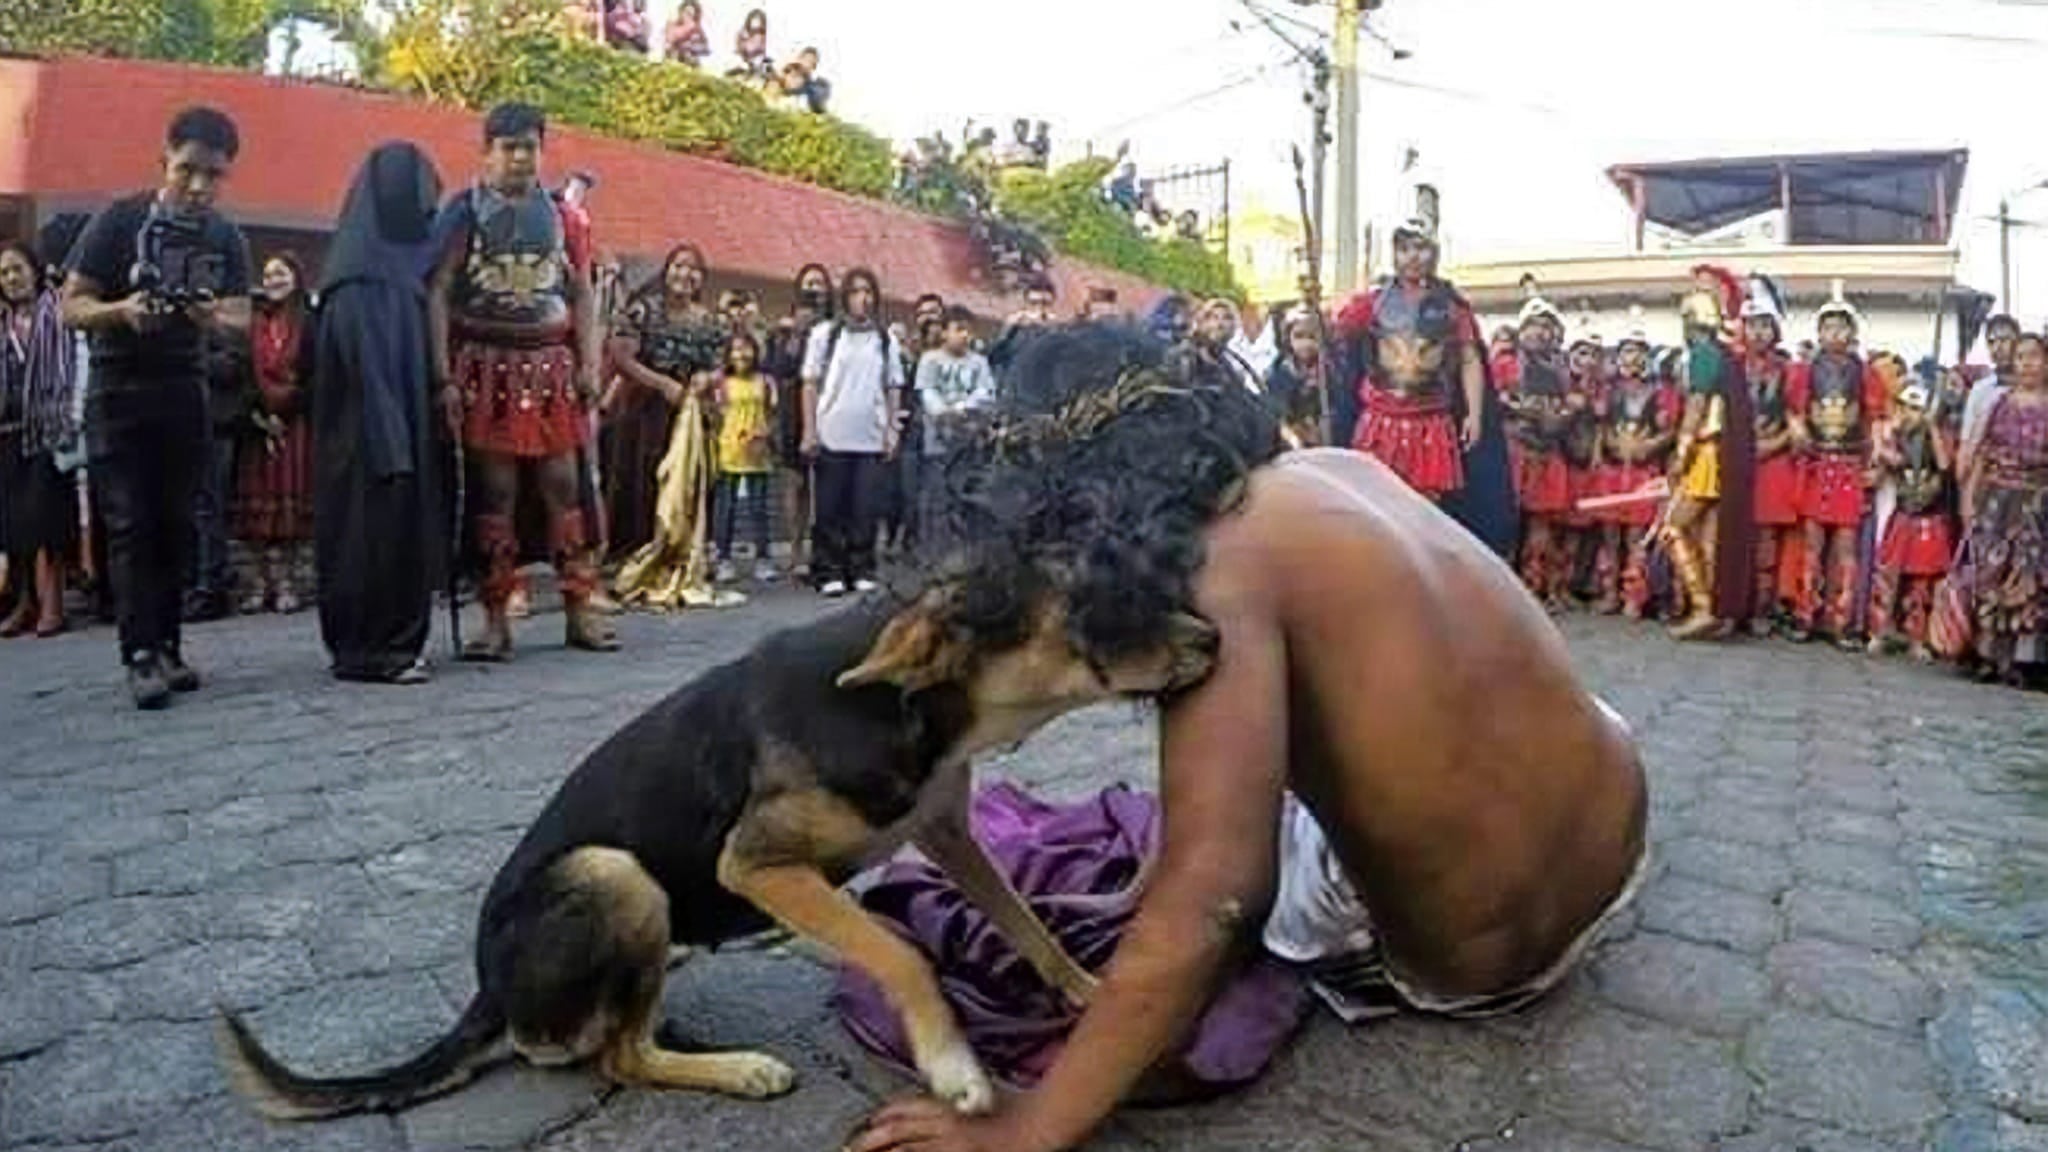 Perrito consuela a "Jesús" durante una dramatización en Sumpango, Sacatepéquez